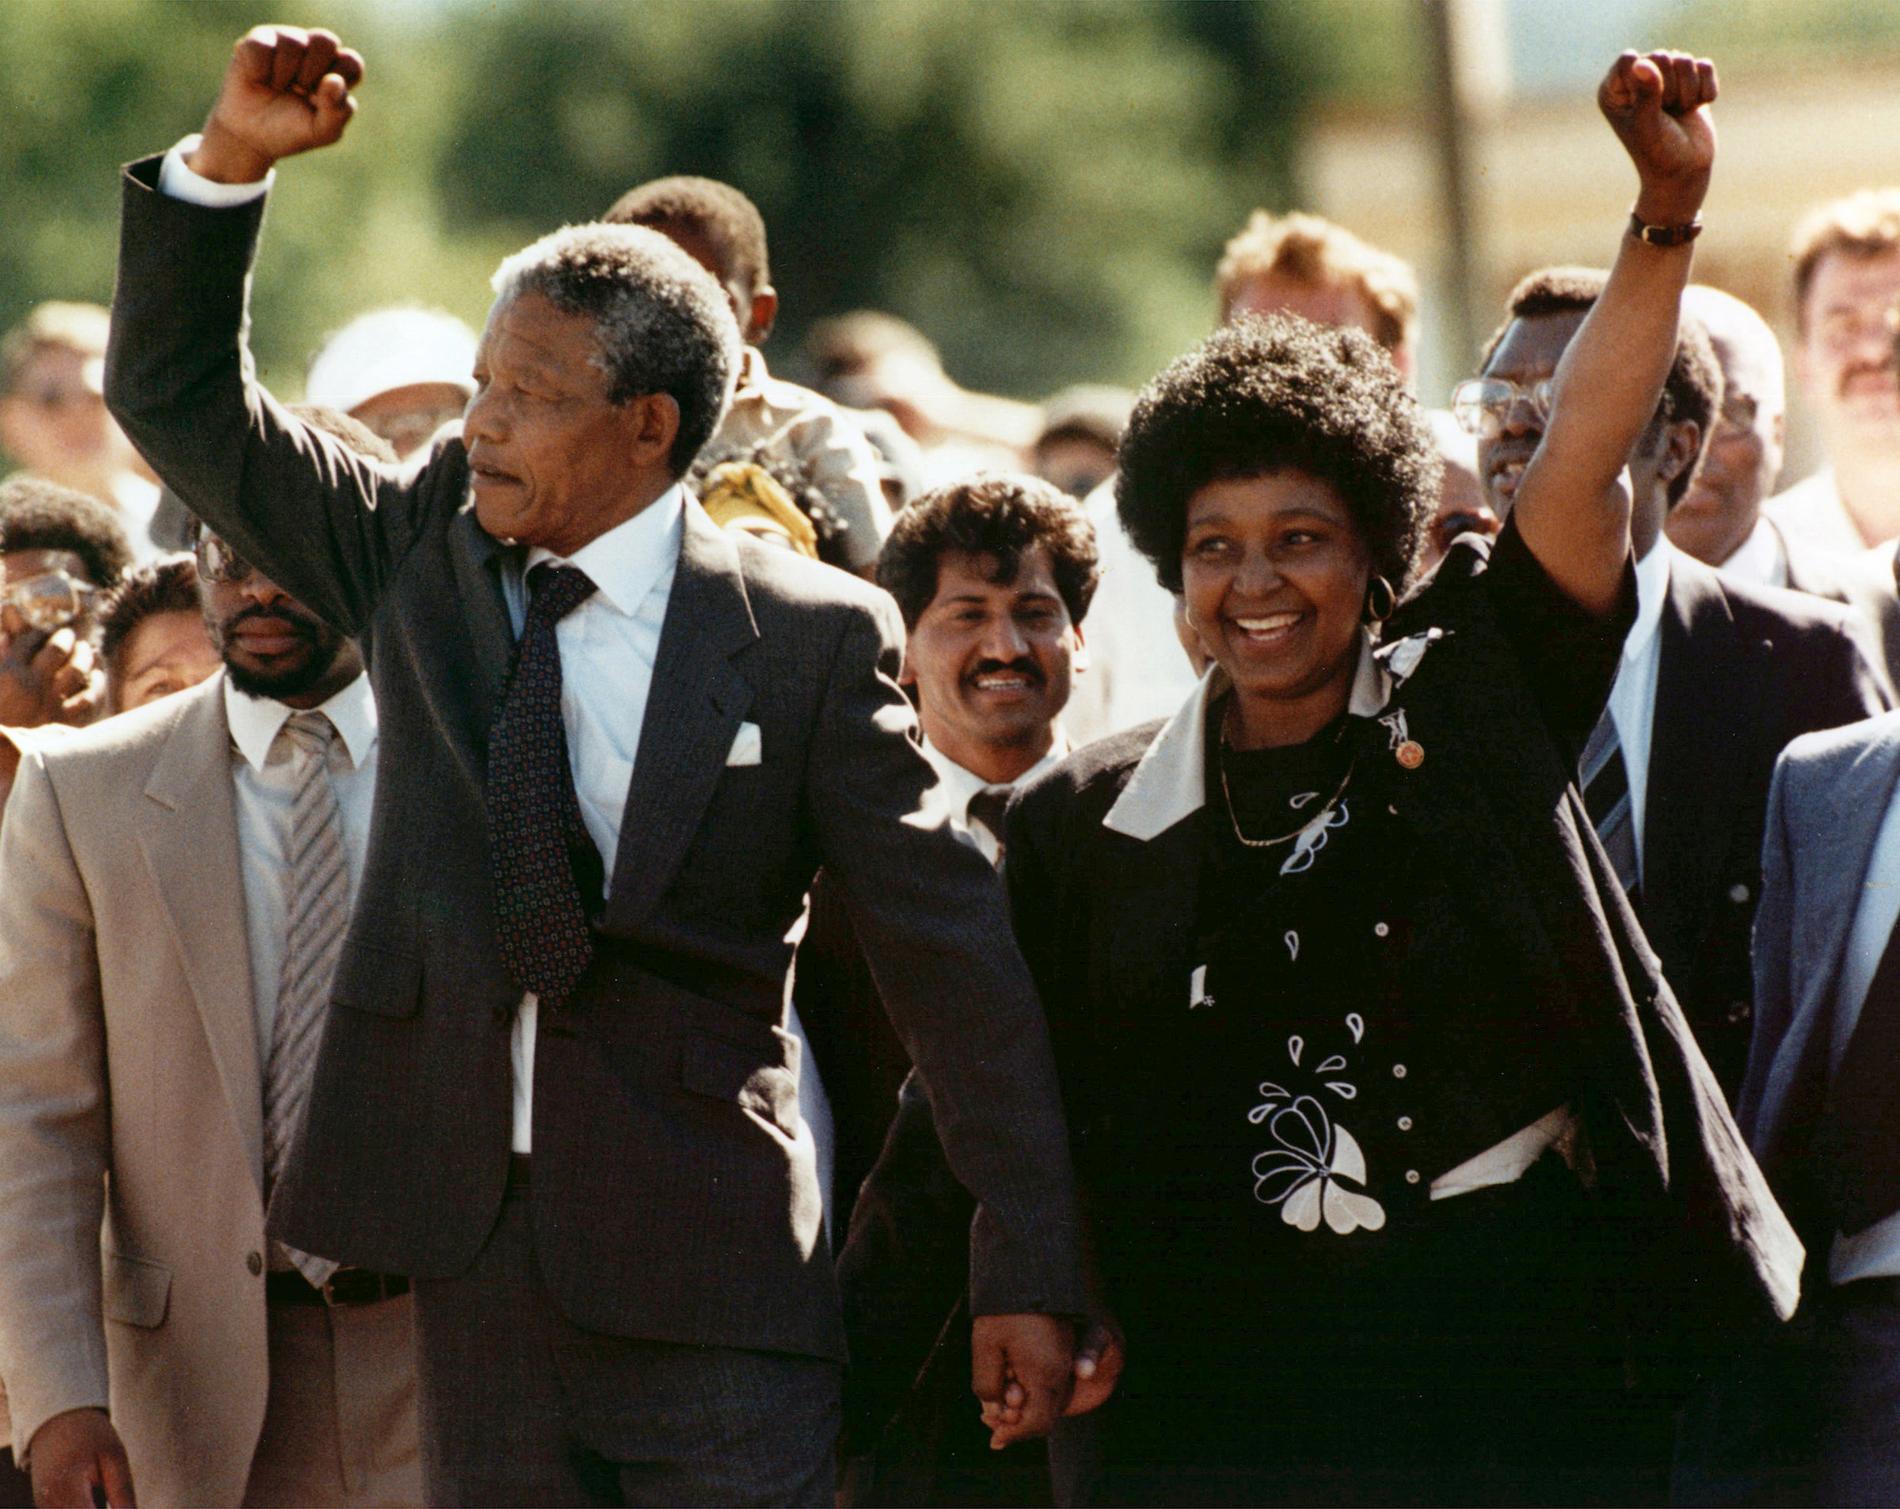 FRI – EFTER 27 ÅR I FÄNGELSE Nelson Mandela med hustrun Winnie strax efter att han släppts fri från fångenskapen på Robben island i Sydafrika.